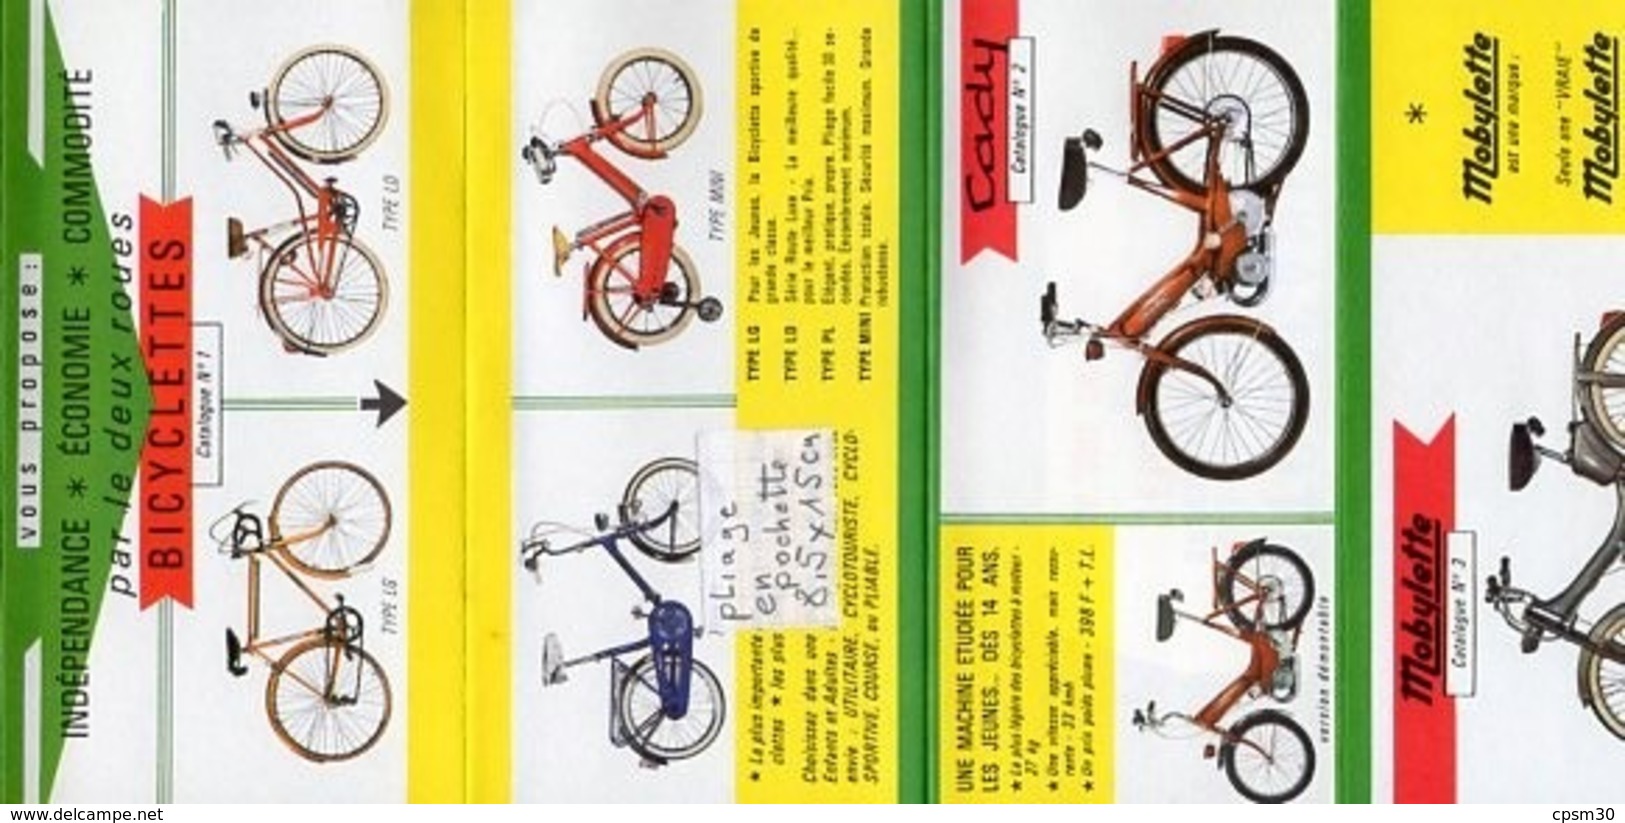 tarif de vente vélo cyclomoteur motocyclette motobécane et divers publicités de cycles cyclomoteurs (20 documents)